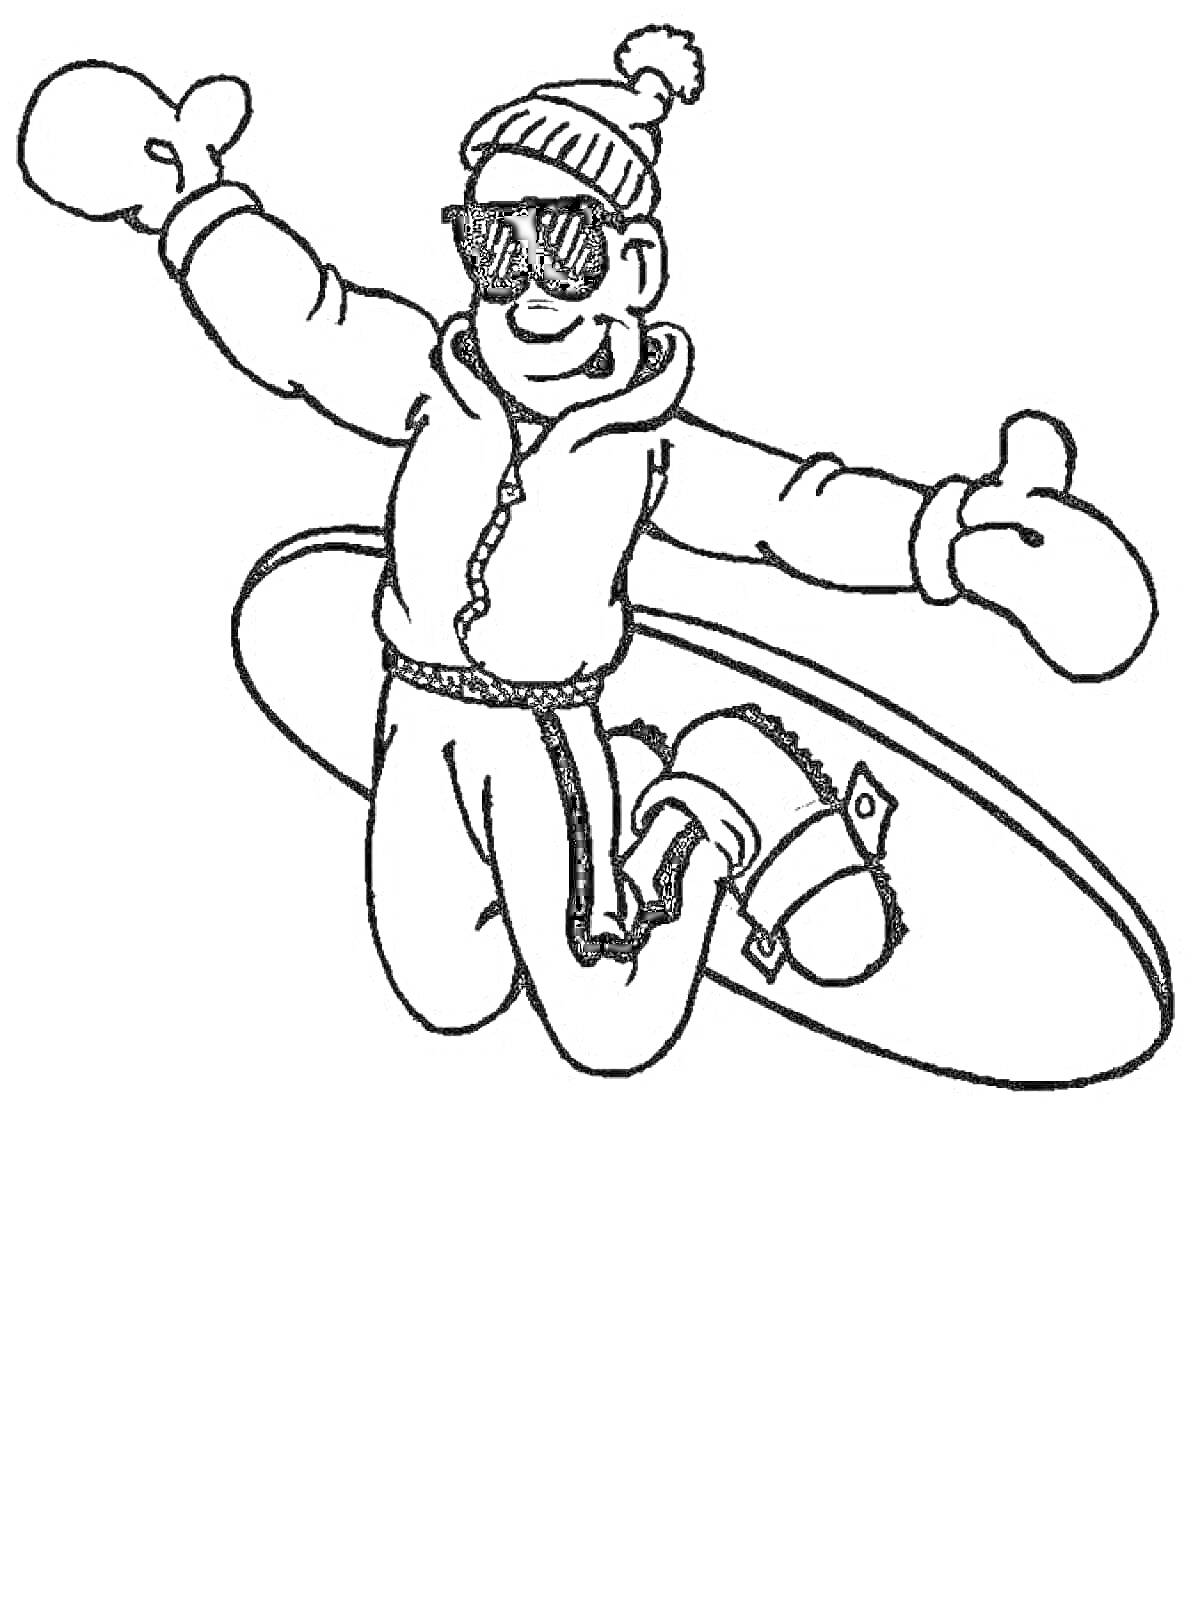 мальчик на сноуборде в зимней одежде и солнечных очках, выполняющий трюк в воздухе